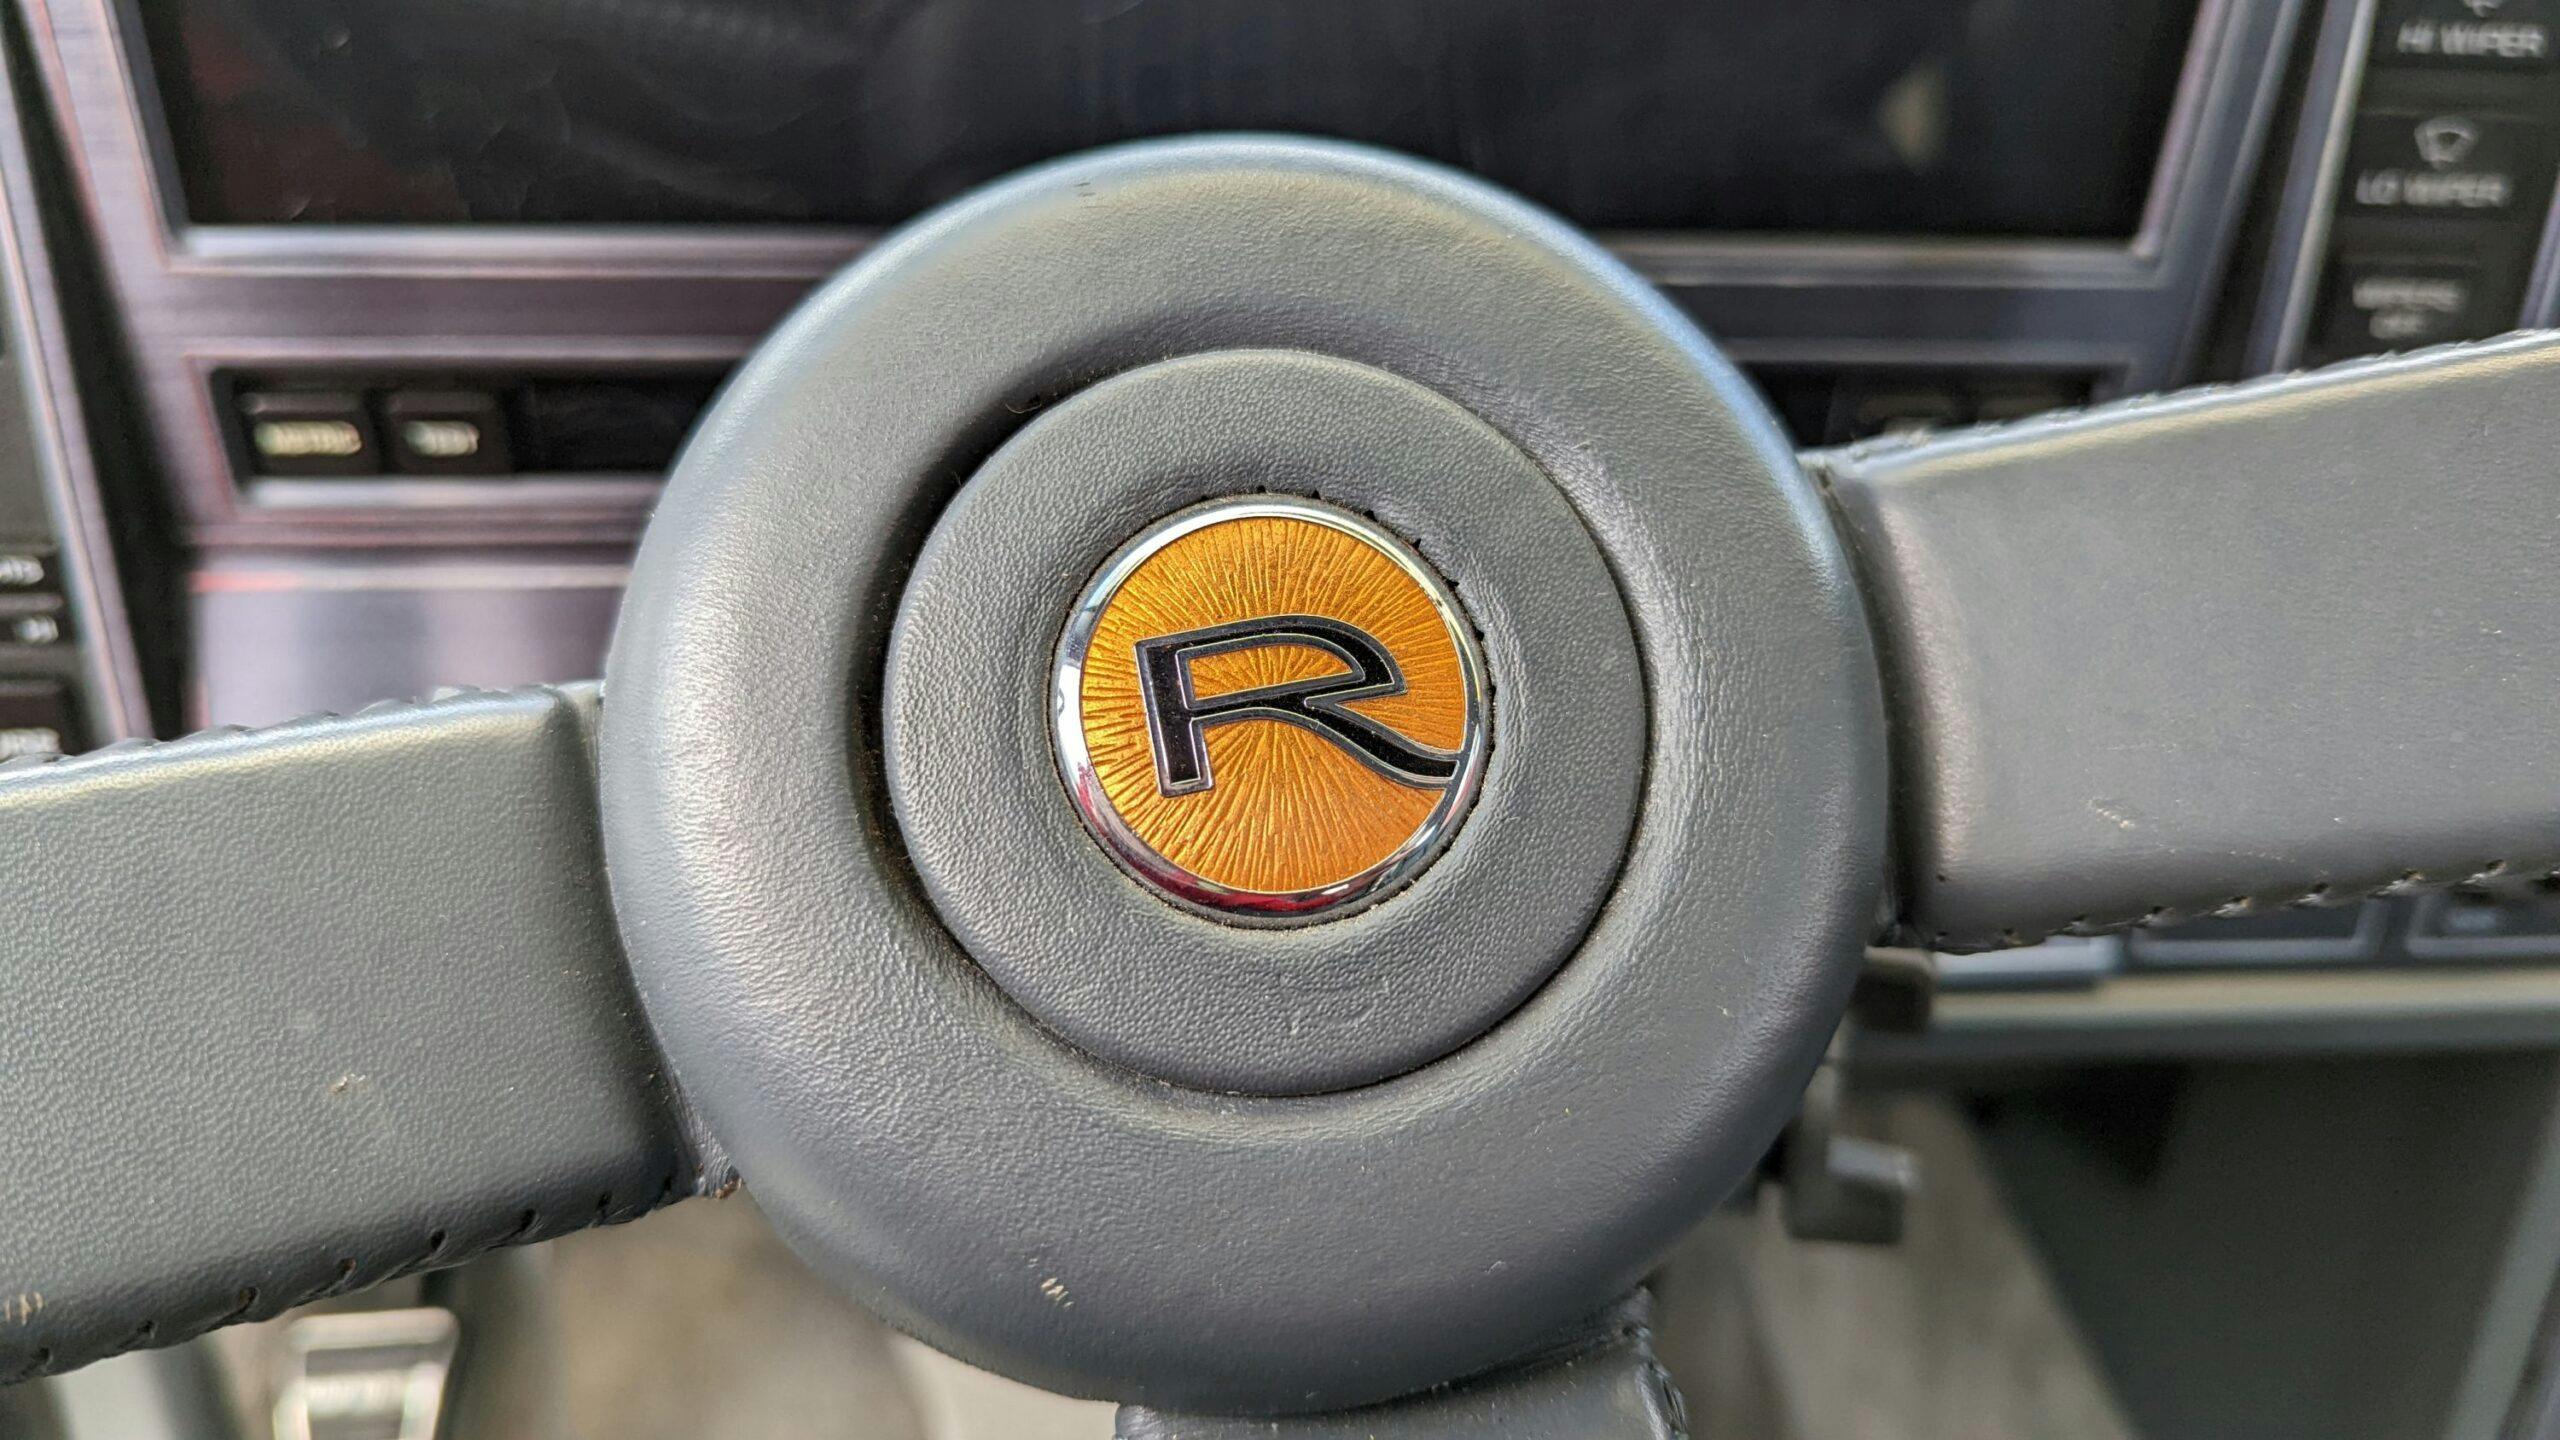 1989 Buick Reatta steering wheel detail